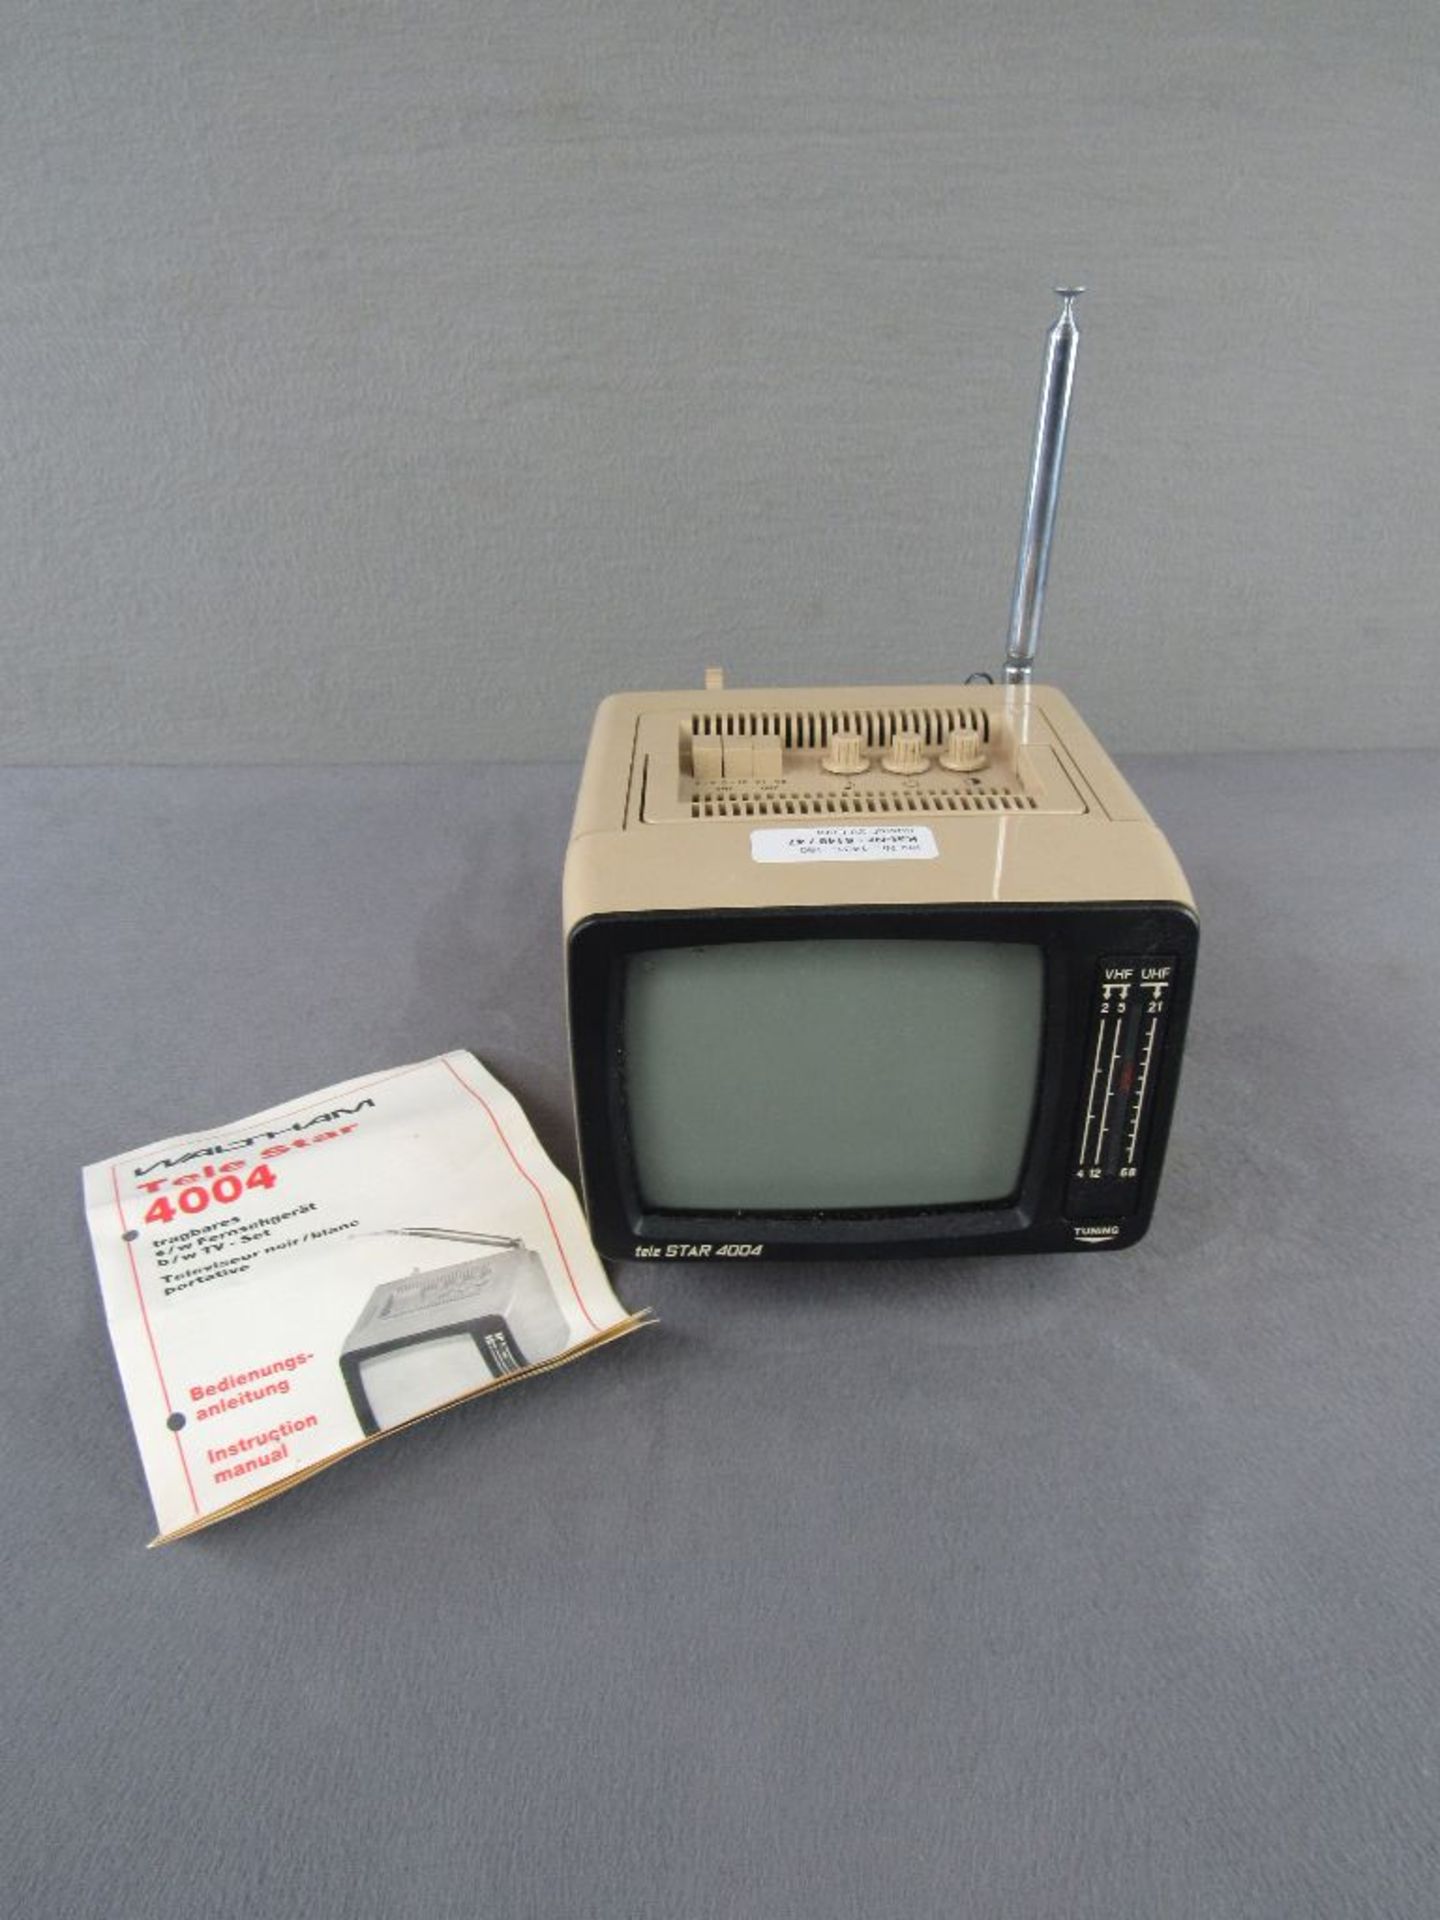 Vintage tragbarer Fernseher 70er Jahre Telestar 4004 mit original Anleitung